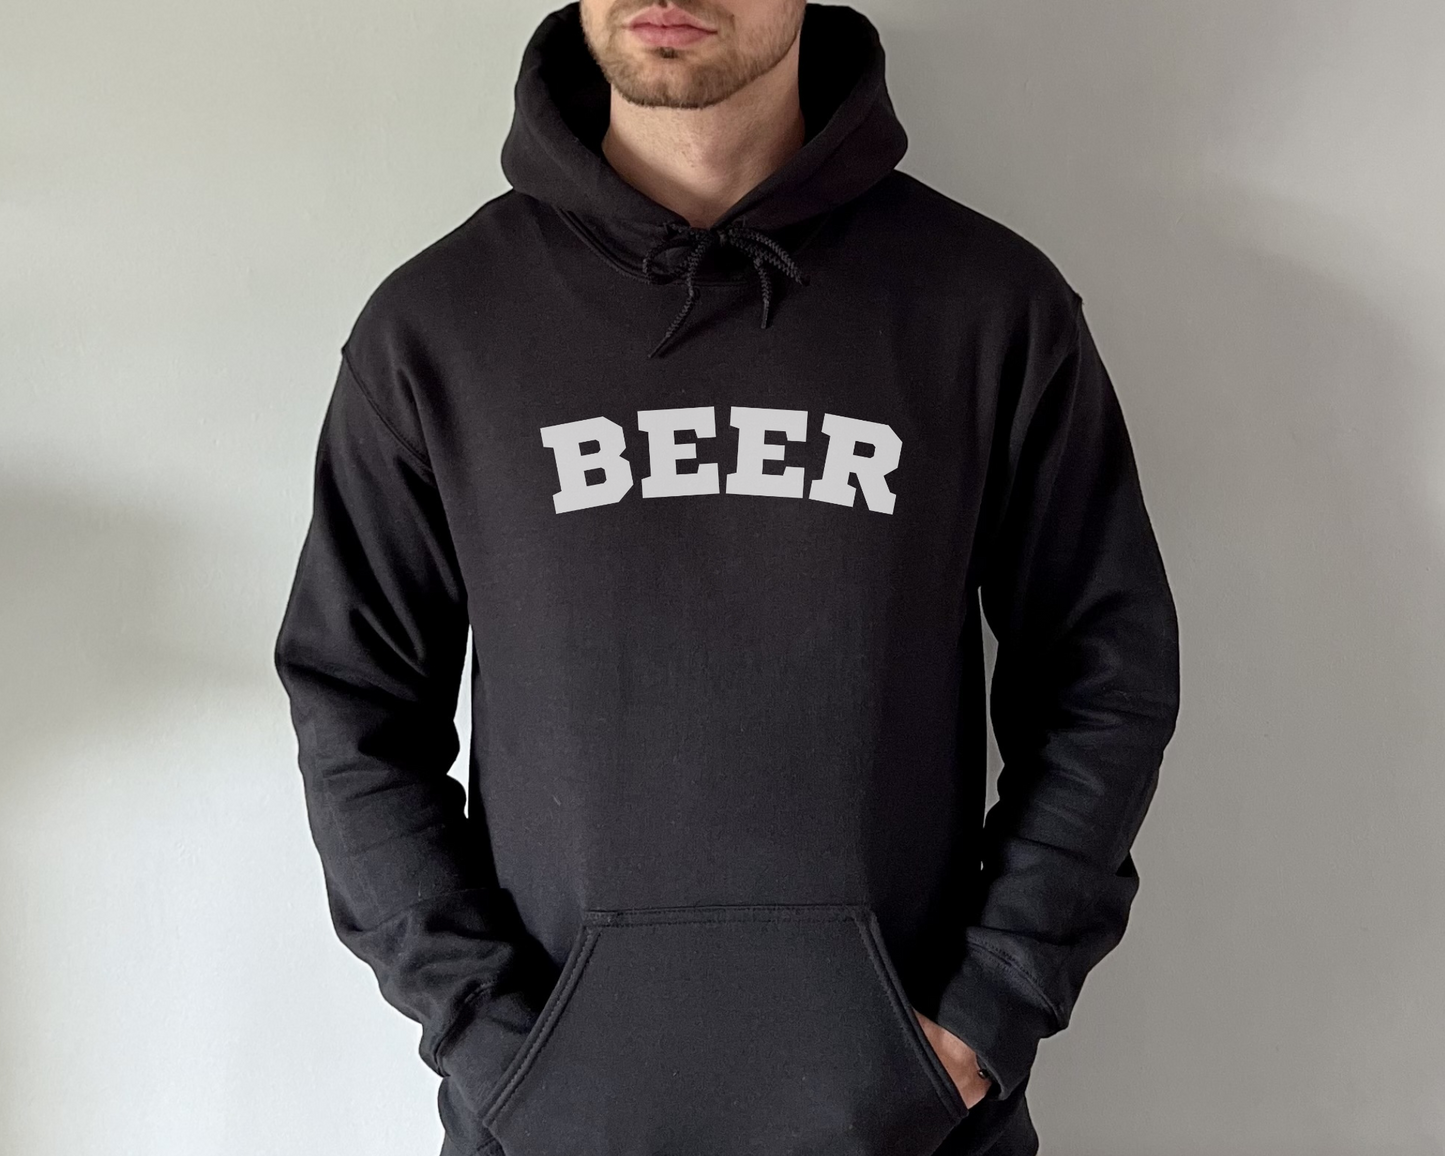 Beer Hoodie in Black, male model